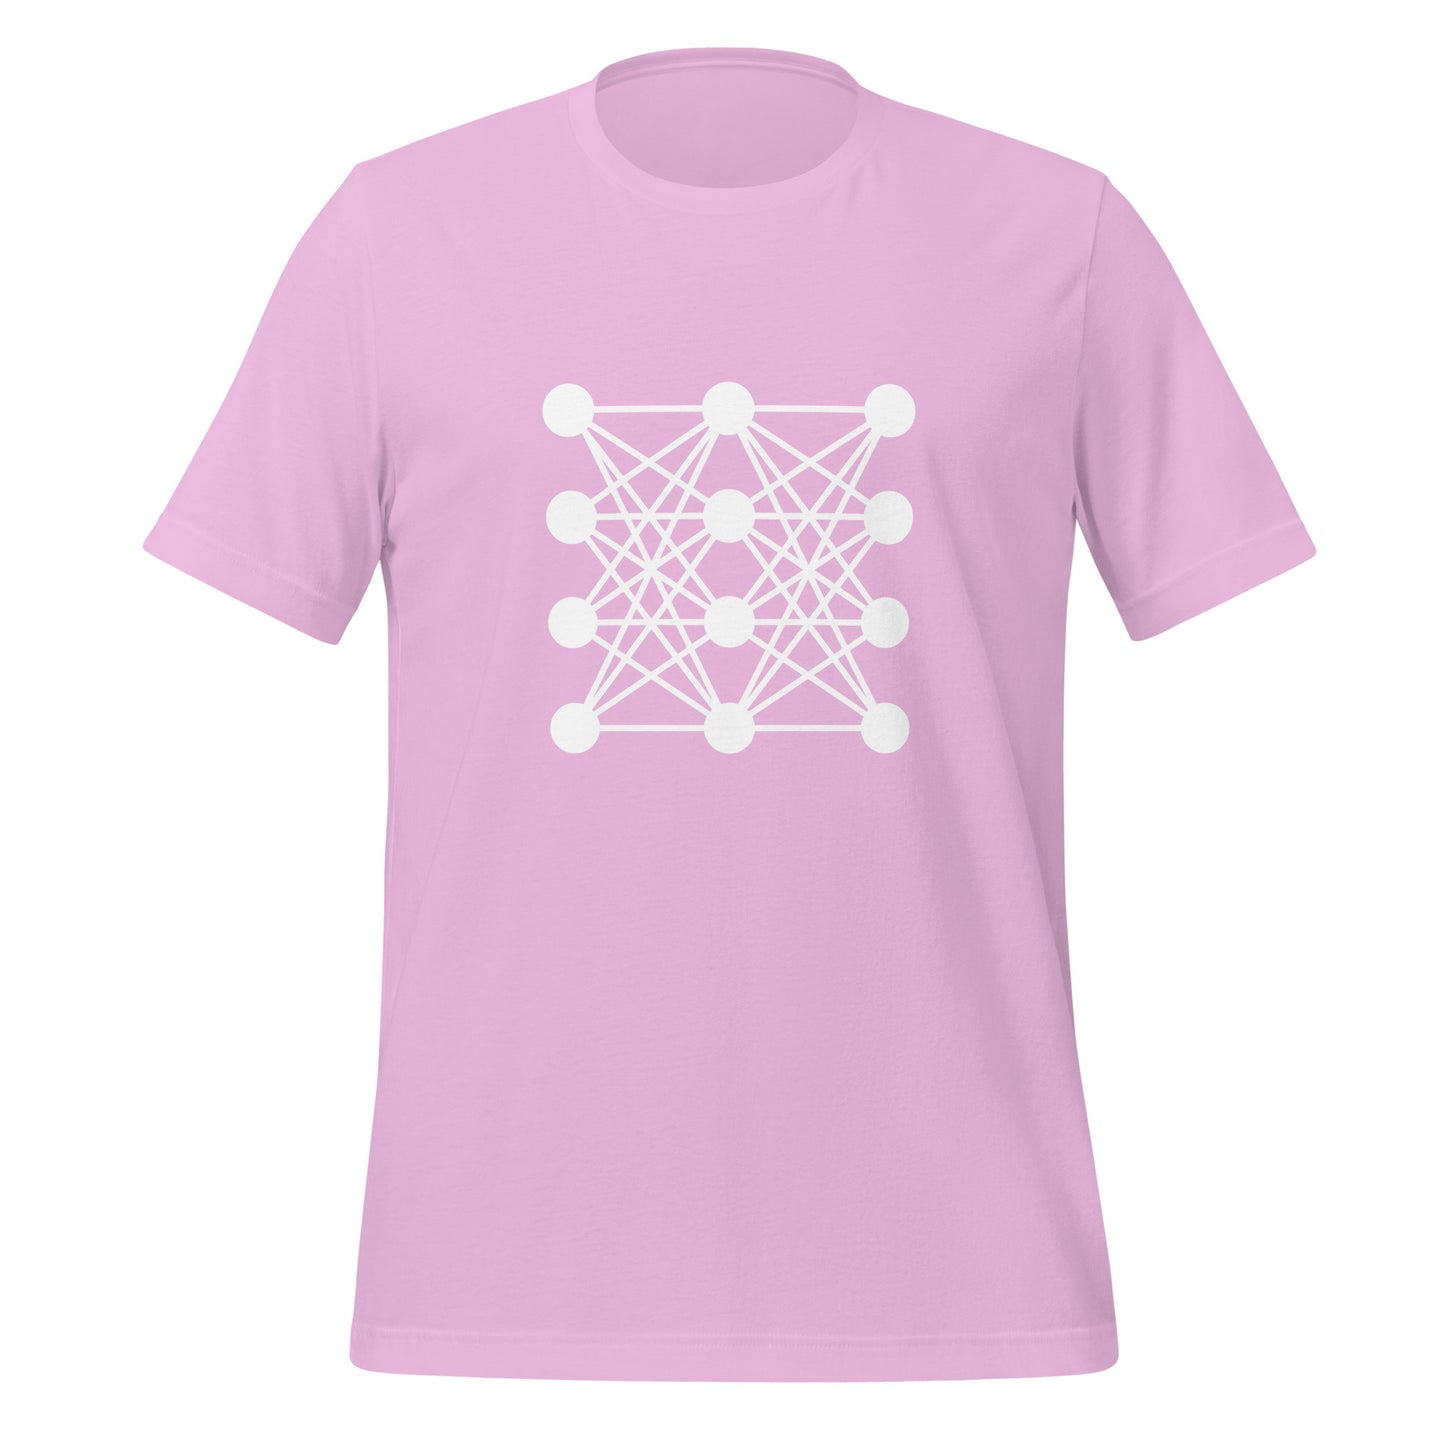 Deep Neural Network T-Shirt 8 (unisex)